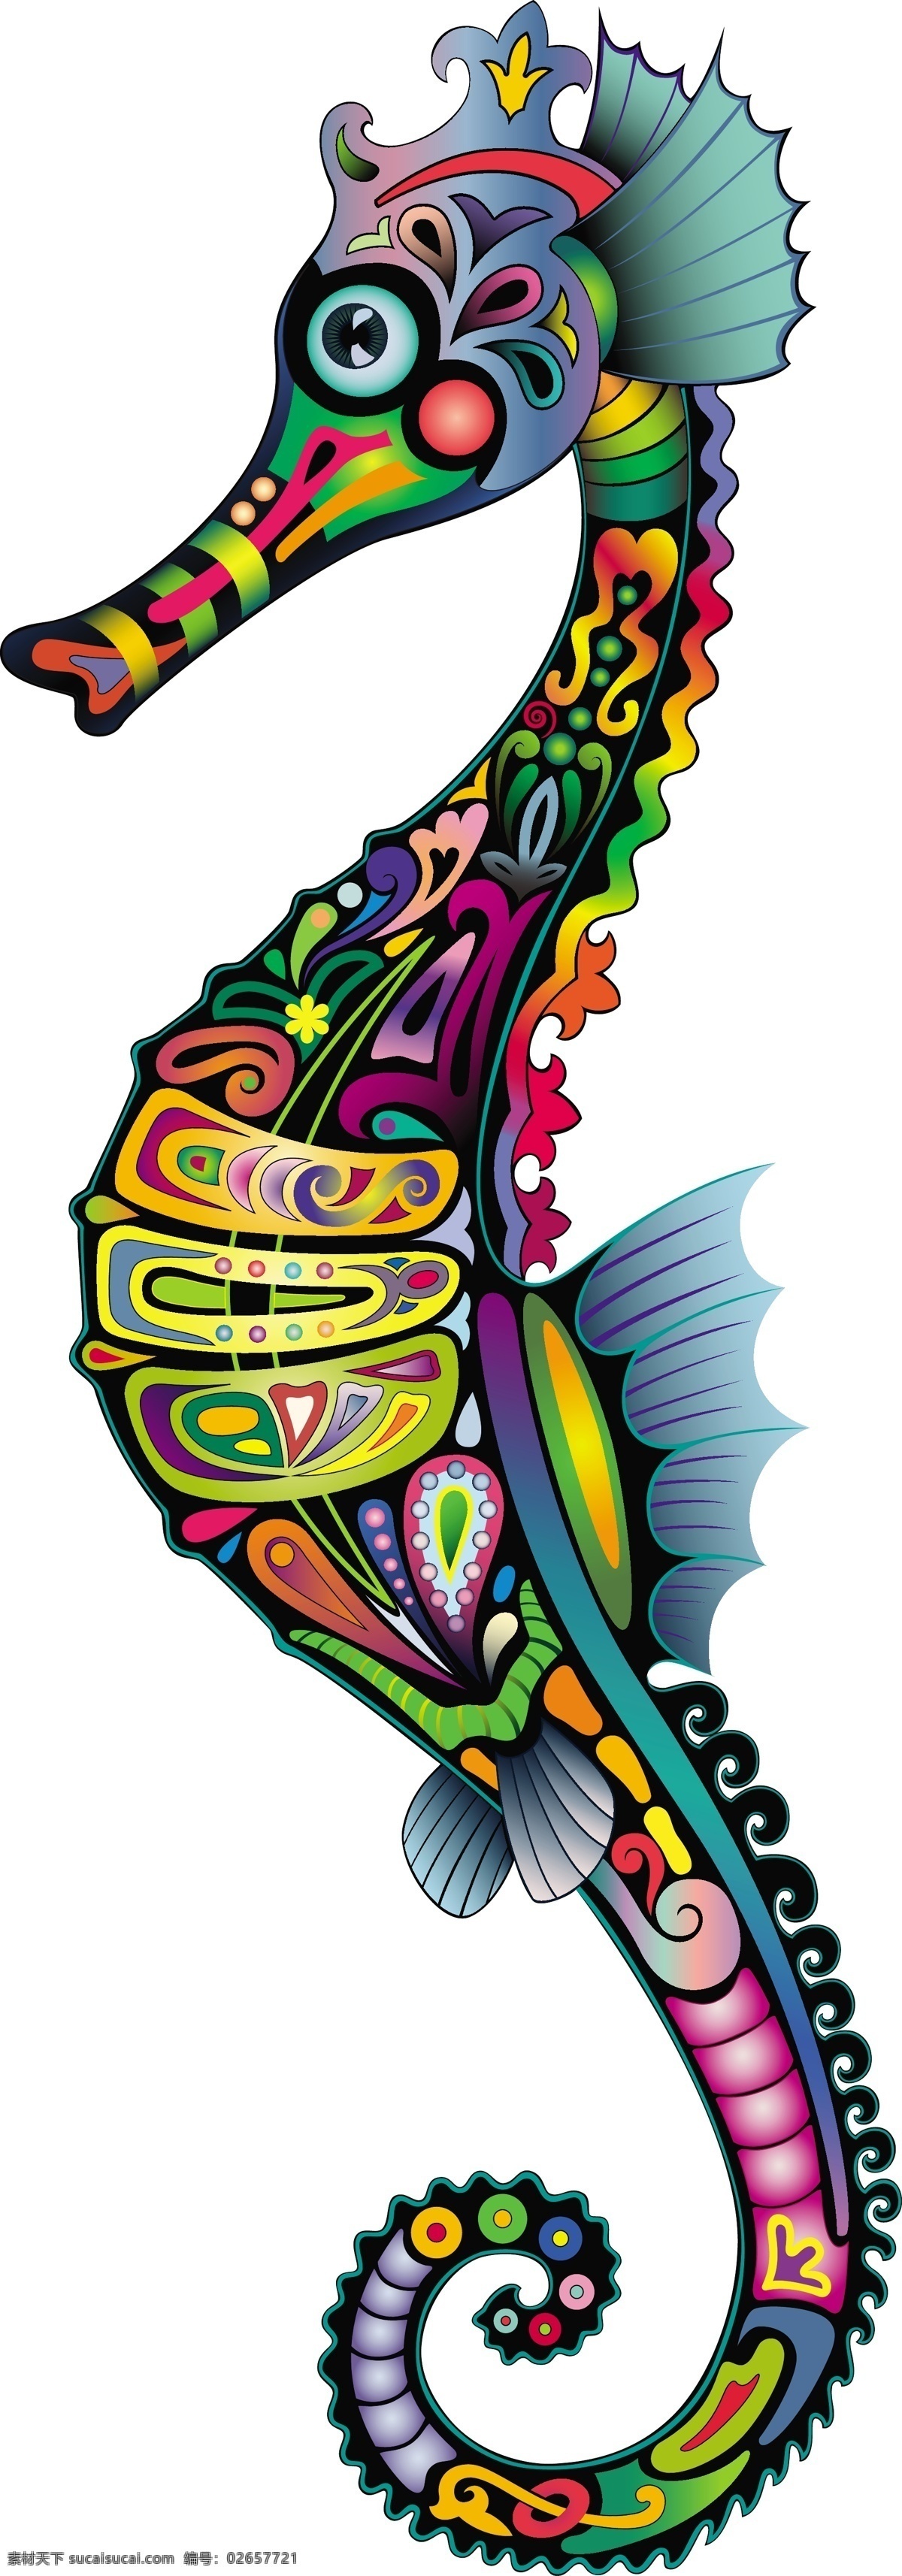 壁虎 彩色 创意设计 刺青 大象 动物 海马 花纹 羚羊 图案 纹身 v1 炫彩 炫丽 原创设计 原创海报